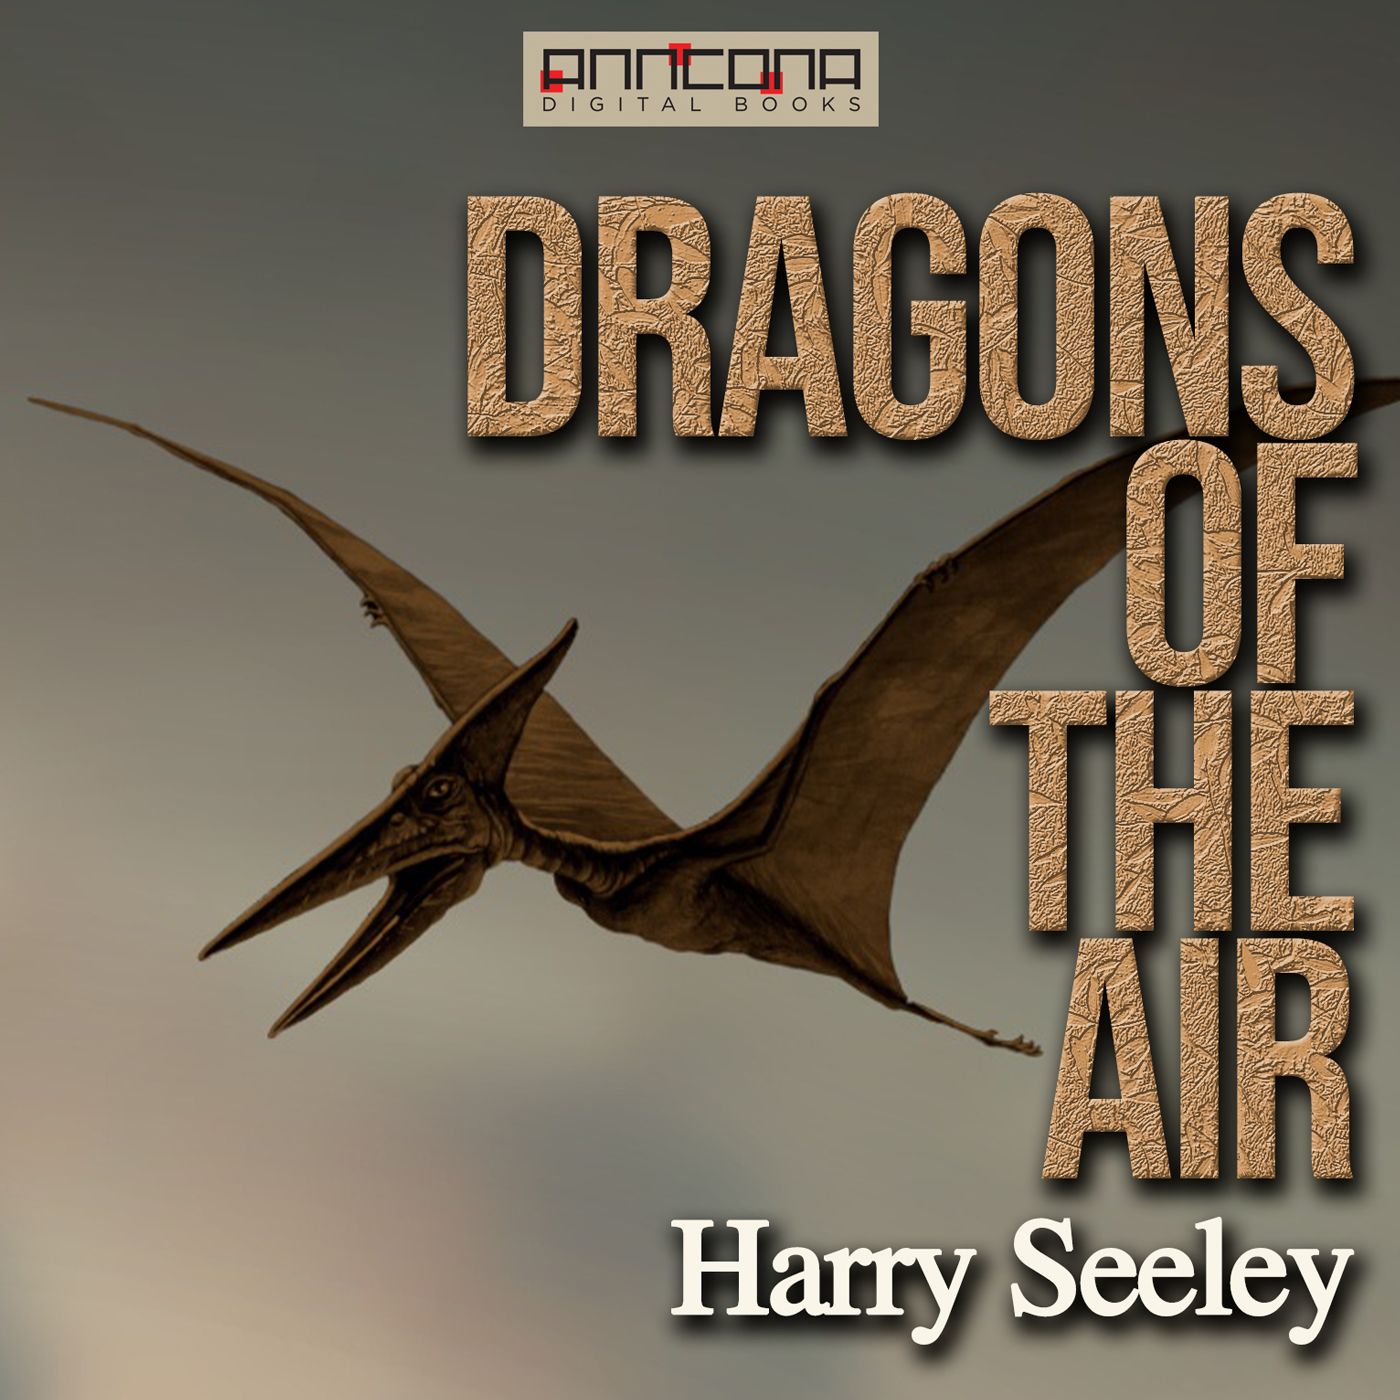 Dragons of the Air, ljudbok av Harry Seeley